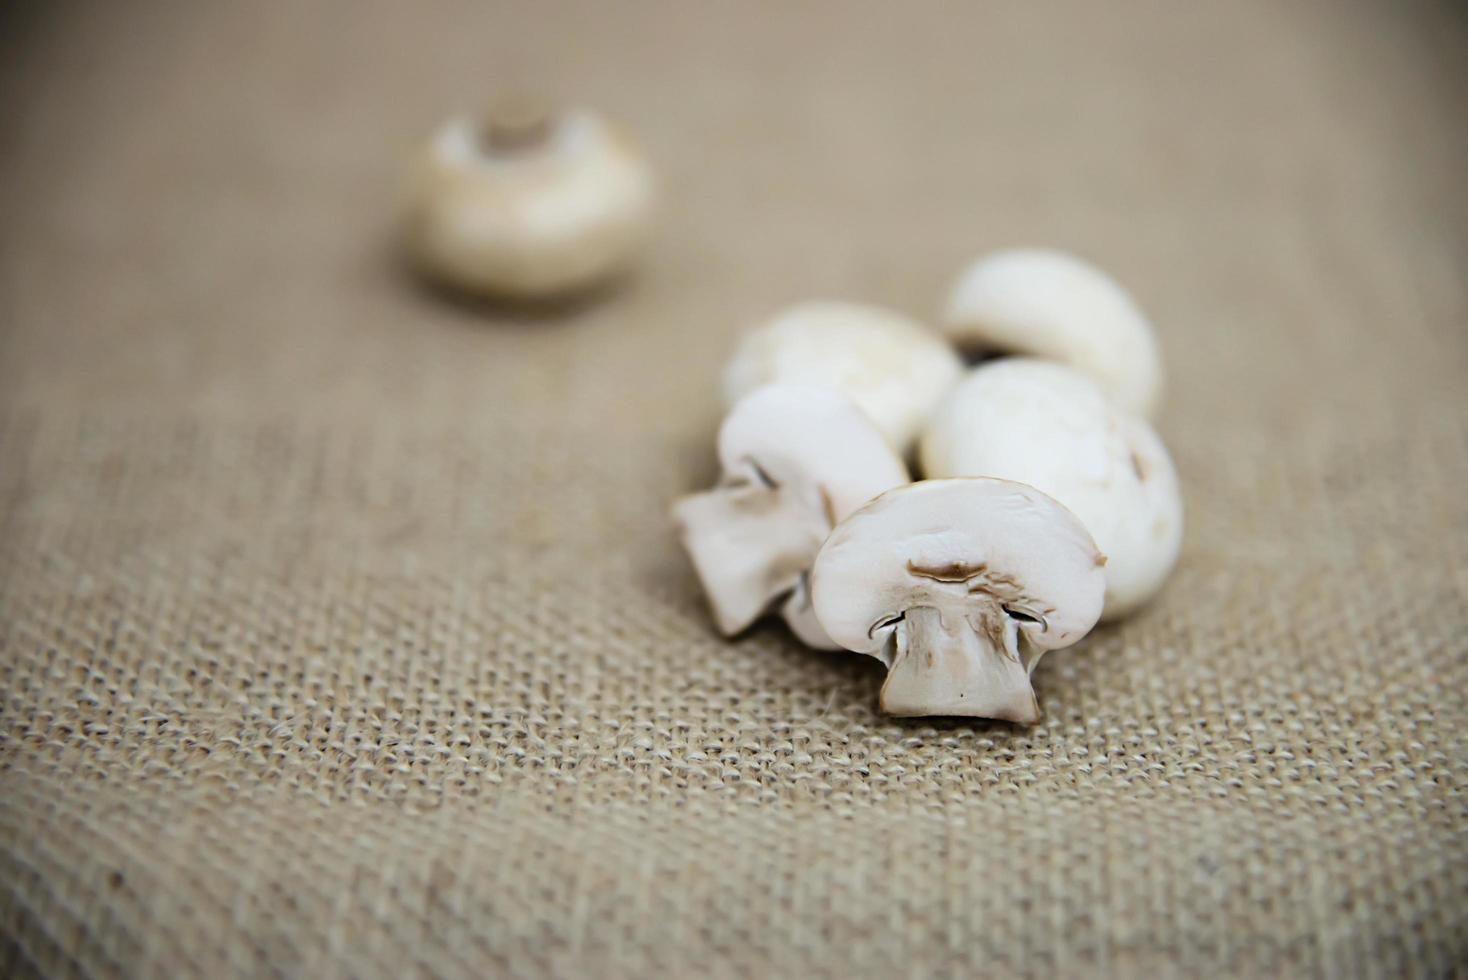 légume de champignon frais dans la cuisine - concept de cuisine de légumes aux champignons frais photo